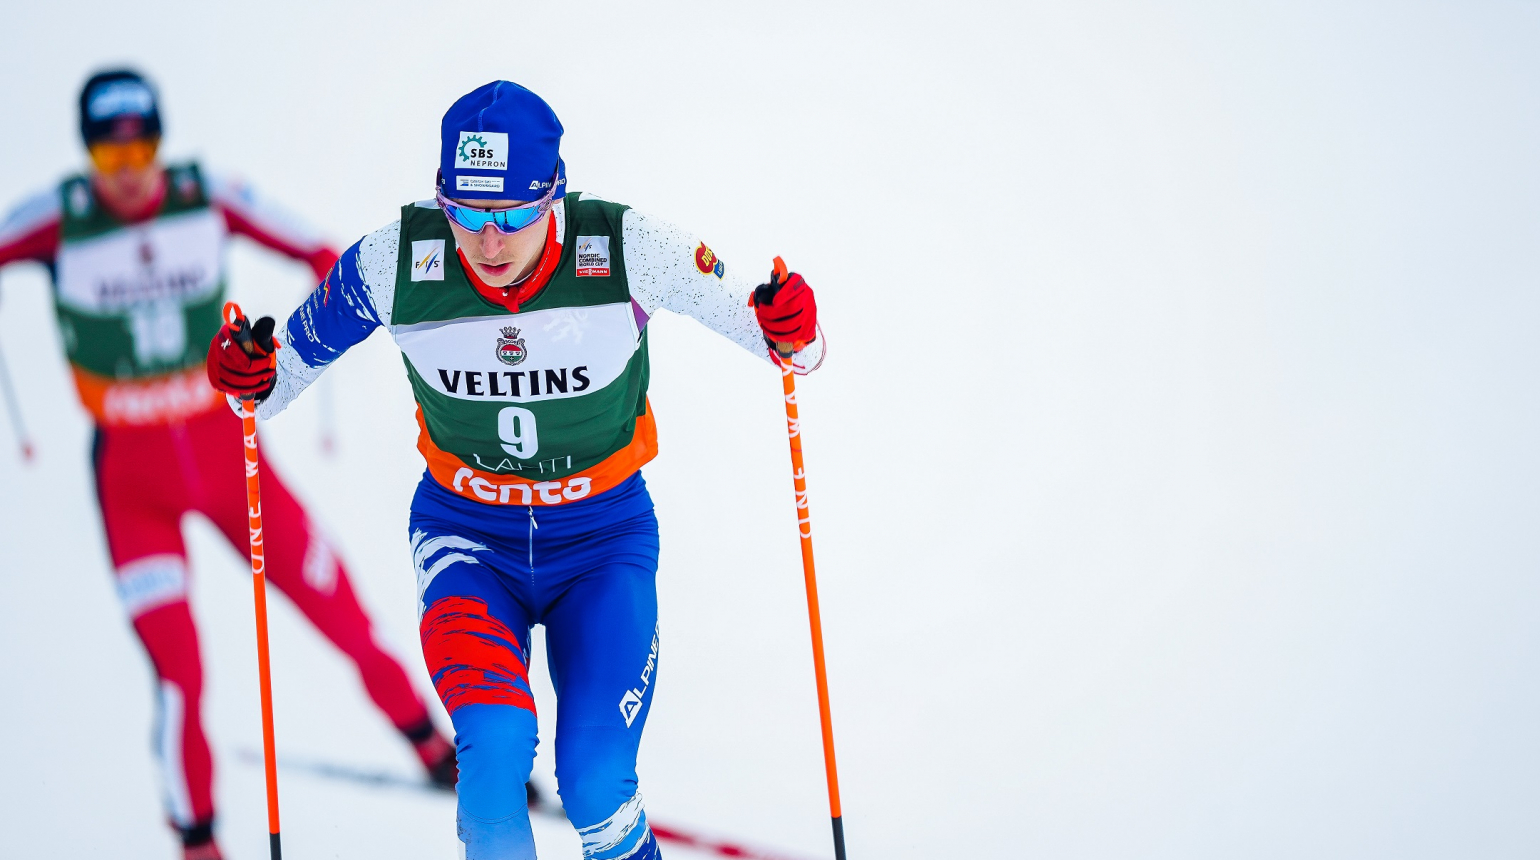 Jan Vytrval zaznamenal v Lahti desátým místem své historické maximum i nejlepší sezónní výsledek českých sdruženářů